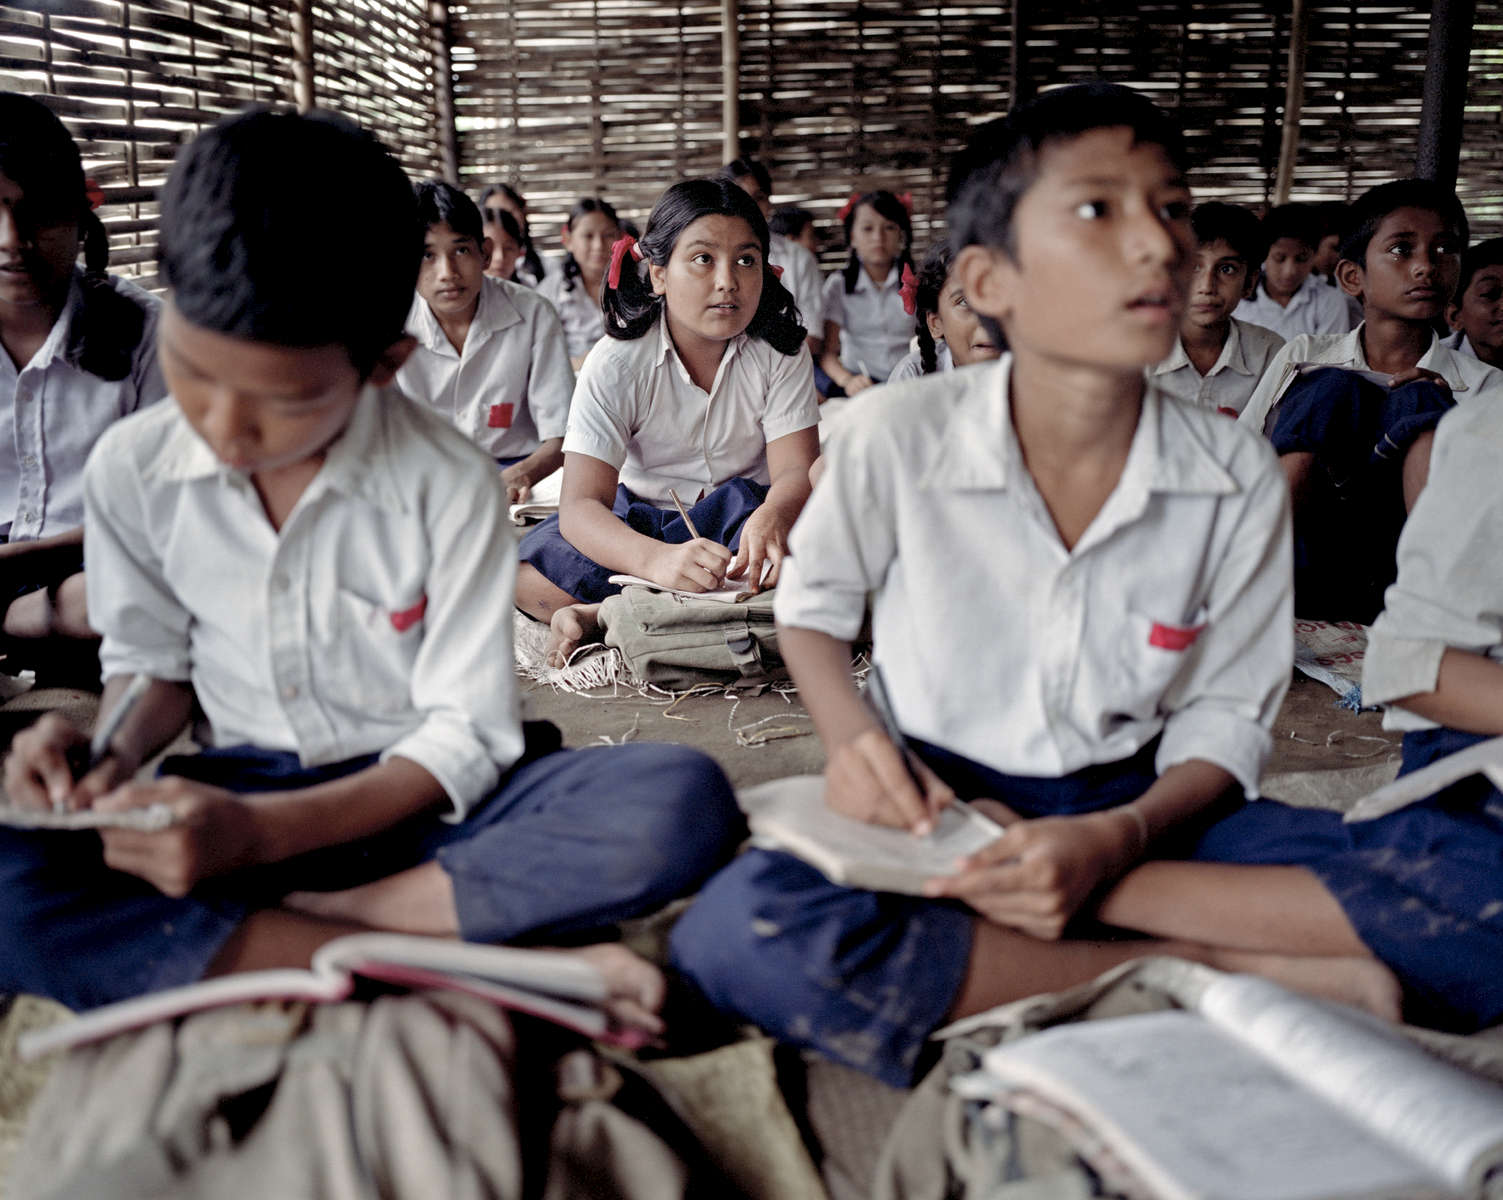 Bidhya en classe dans le camp de Beldangi. Les enfants ont accès à l’éducation grâce au Haut Commissariat pour les Réfugiés (HCR) et l’organisation non-gouvernementale Caritas. Ils apprennent les sciences, la géographie, l’histoire, le Népalais et le Dzongkha la langue Bhoutanaise. Népal, 2009.